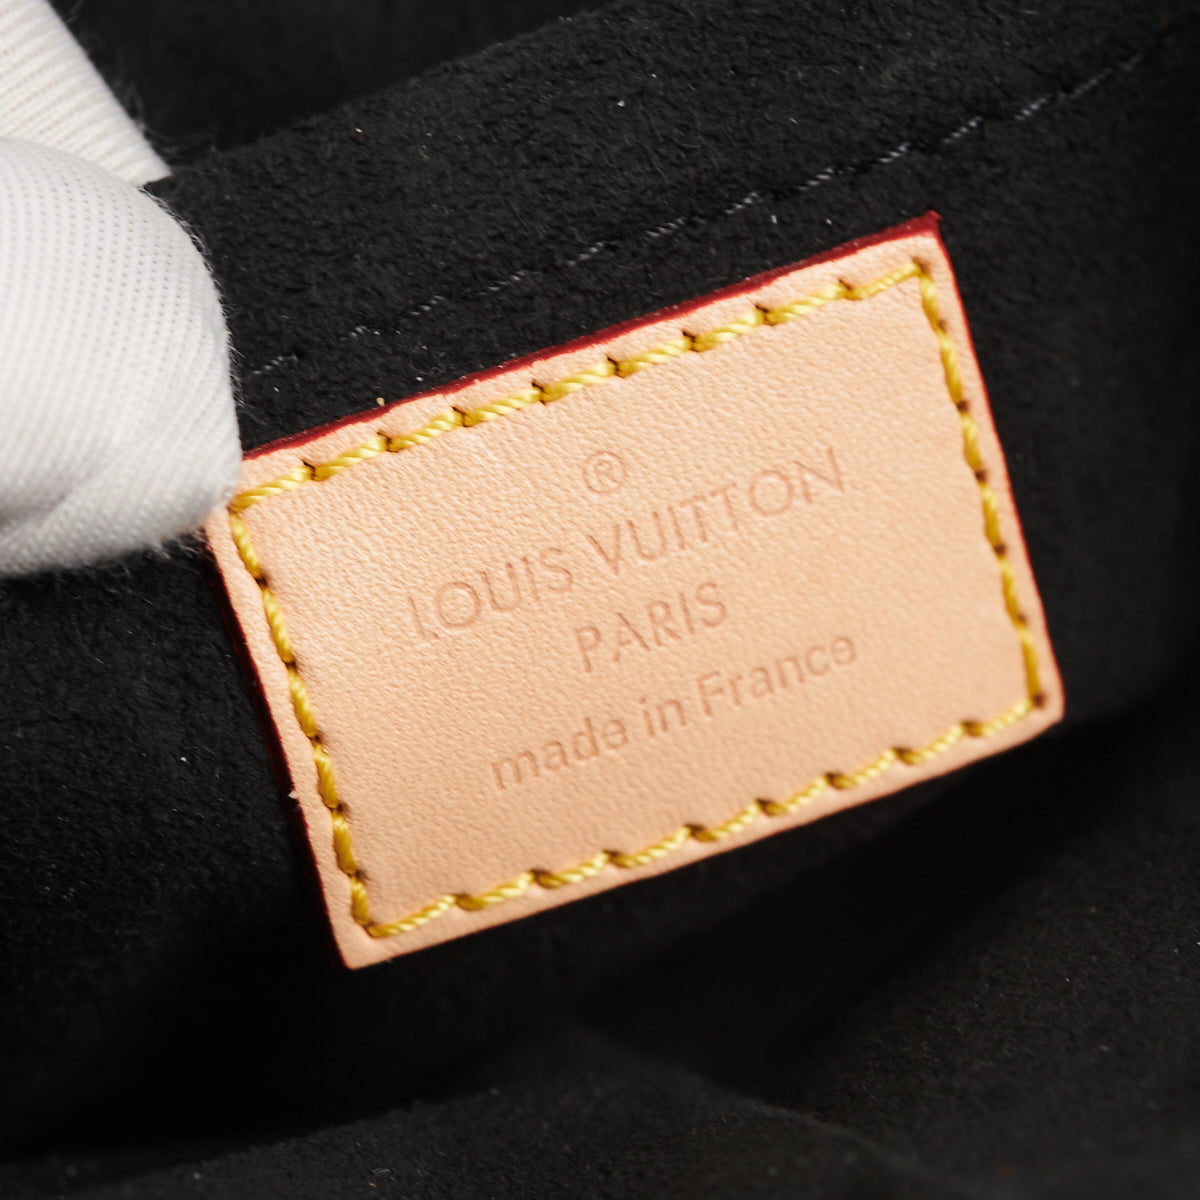 HOLD BC Louis Vuitton Duffle Bag Monogram Canvas - THE PURSE AFFAIR